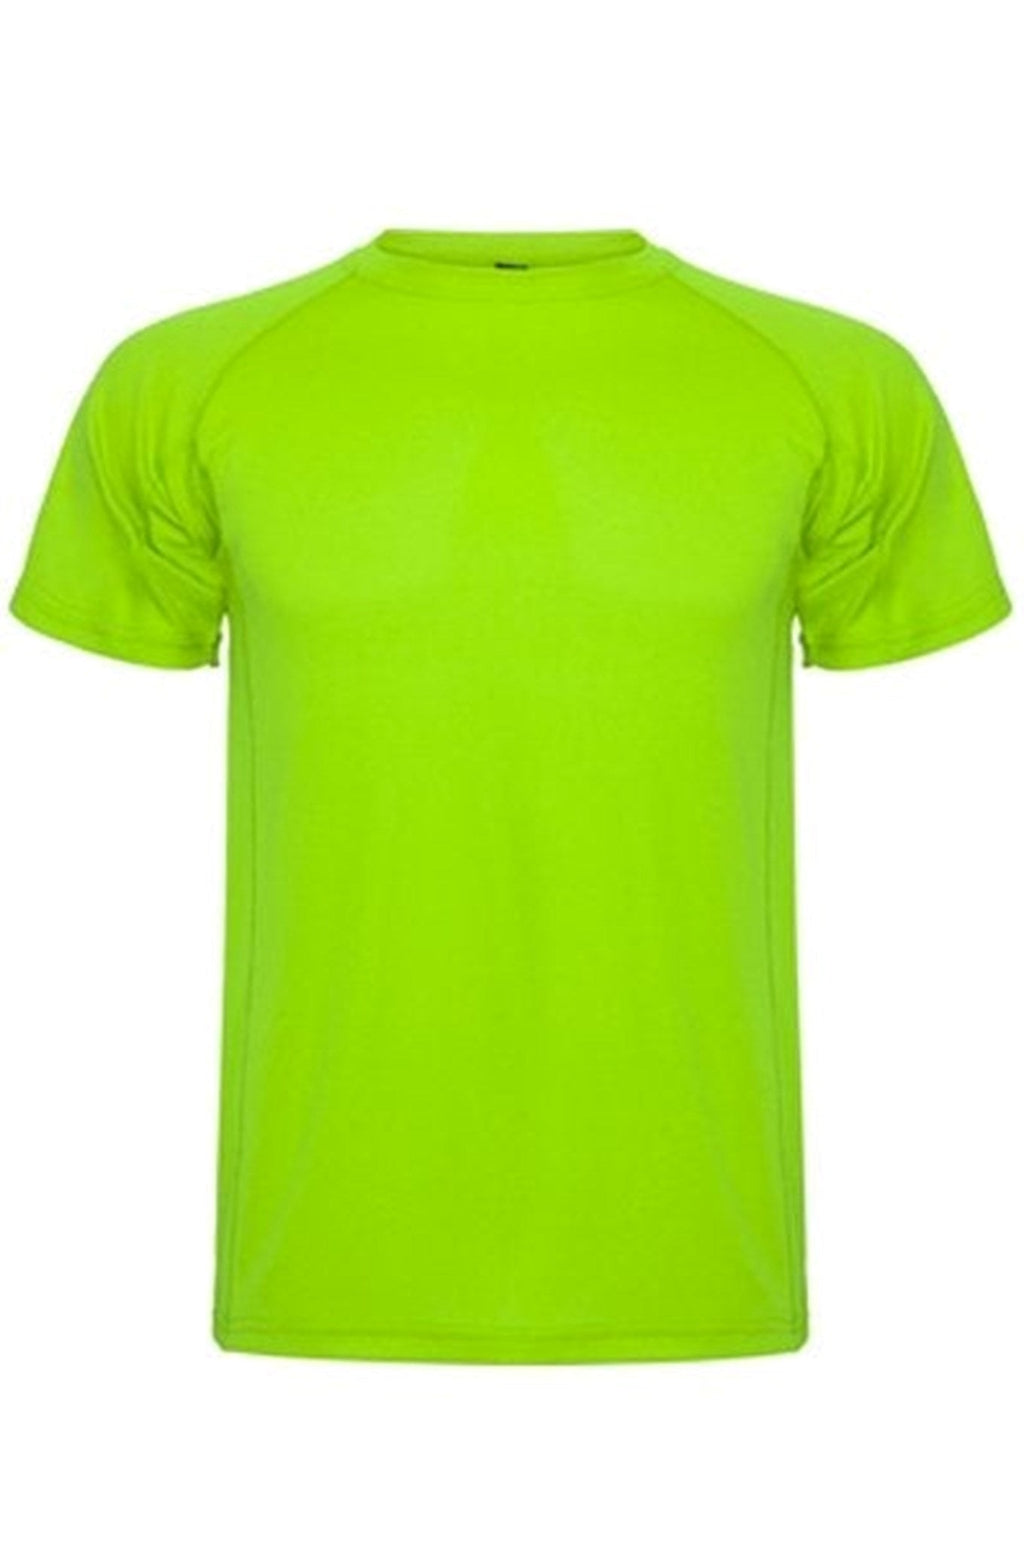 Treniruotės marškinėliai - kalkių žalia